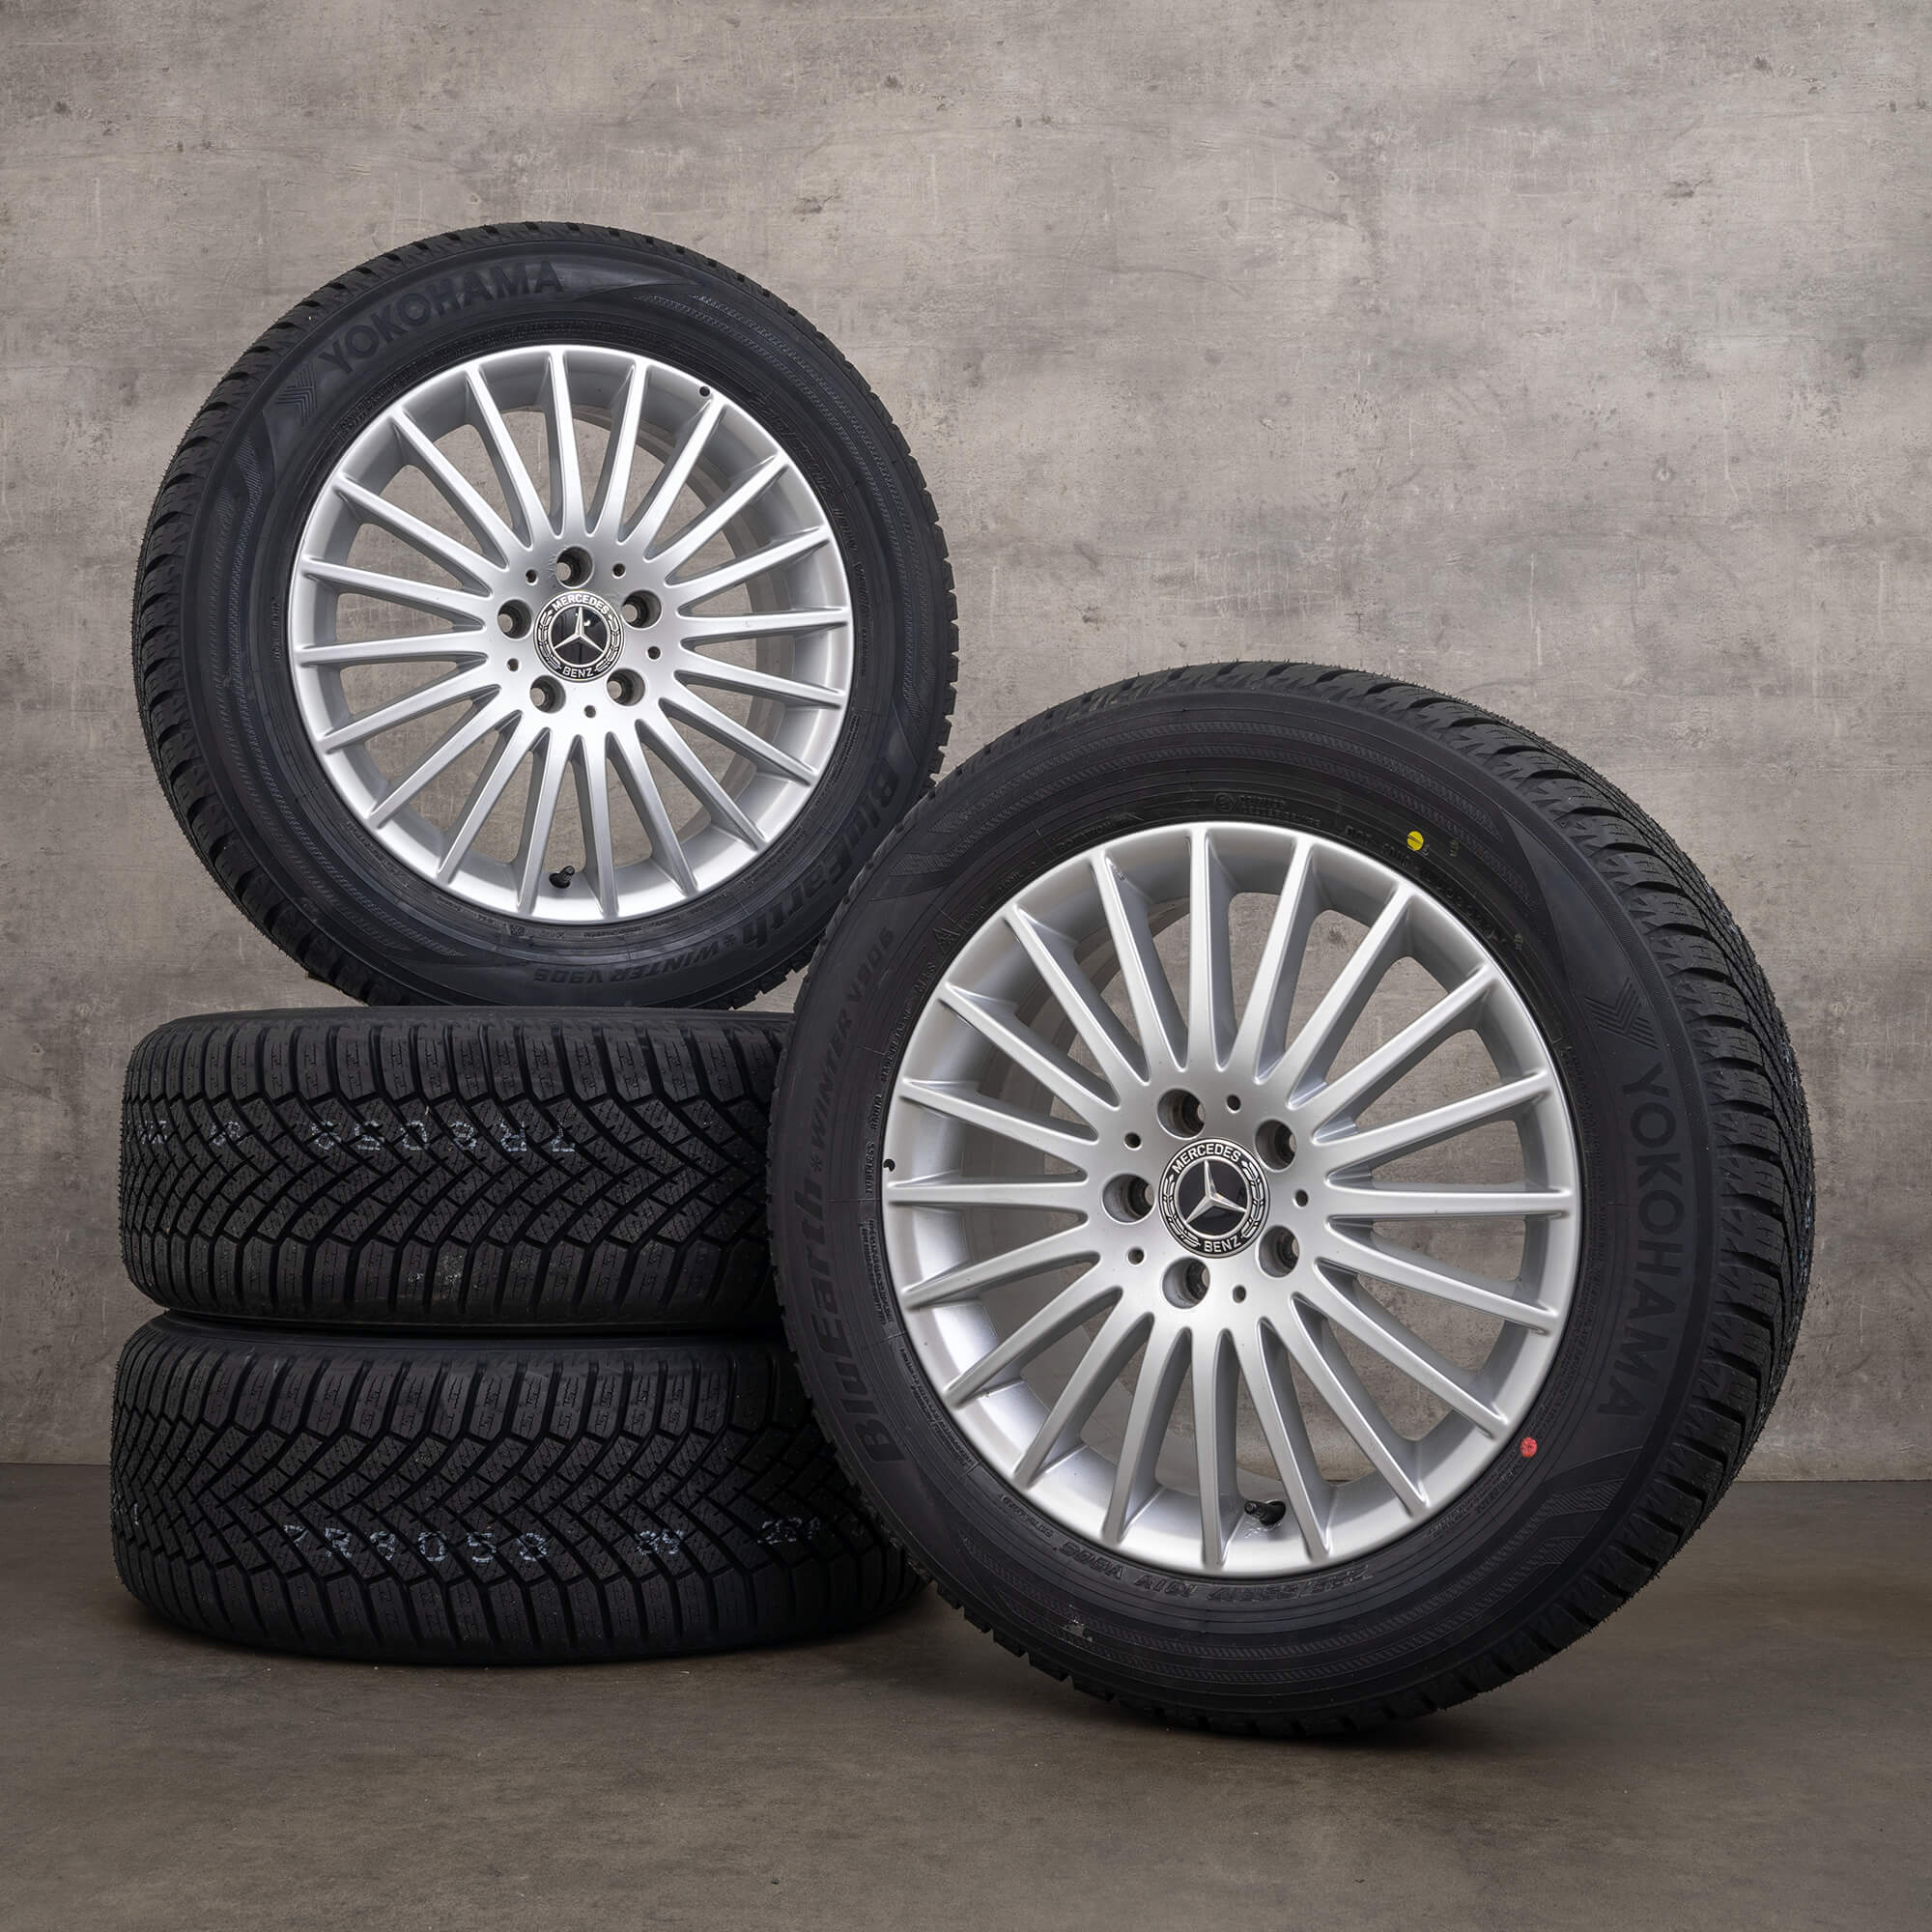 Llantas originales Mercedes Vito Viano W447 de 17 pulgadas con neumáticos